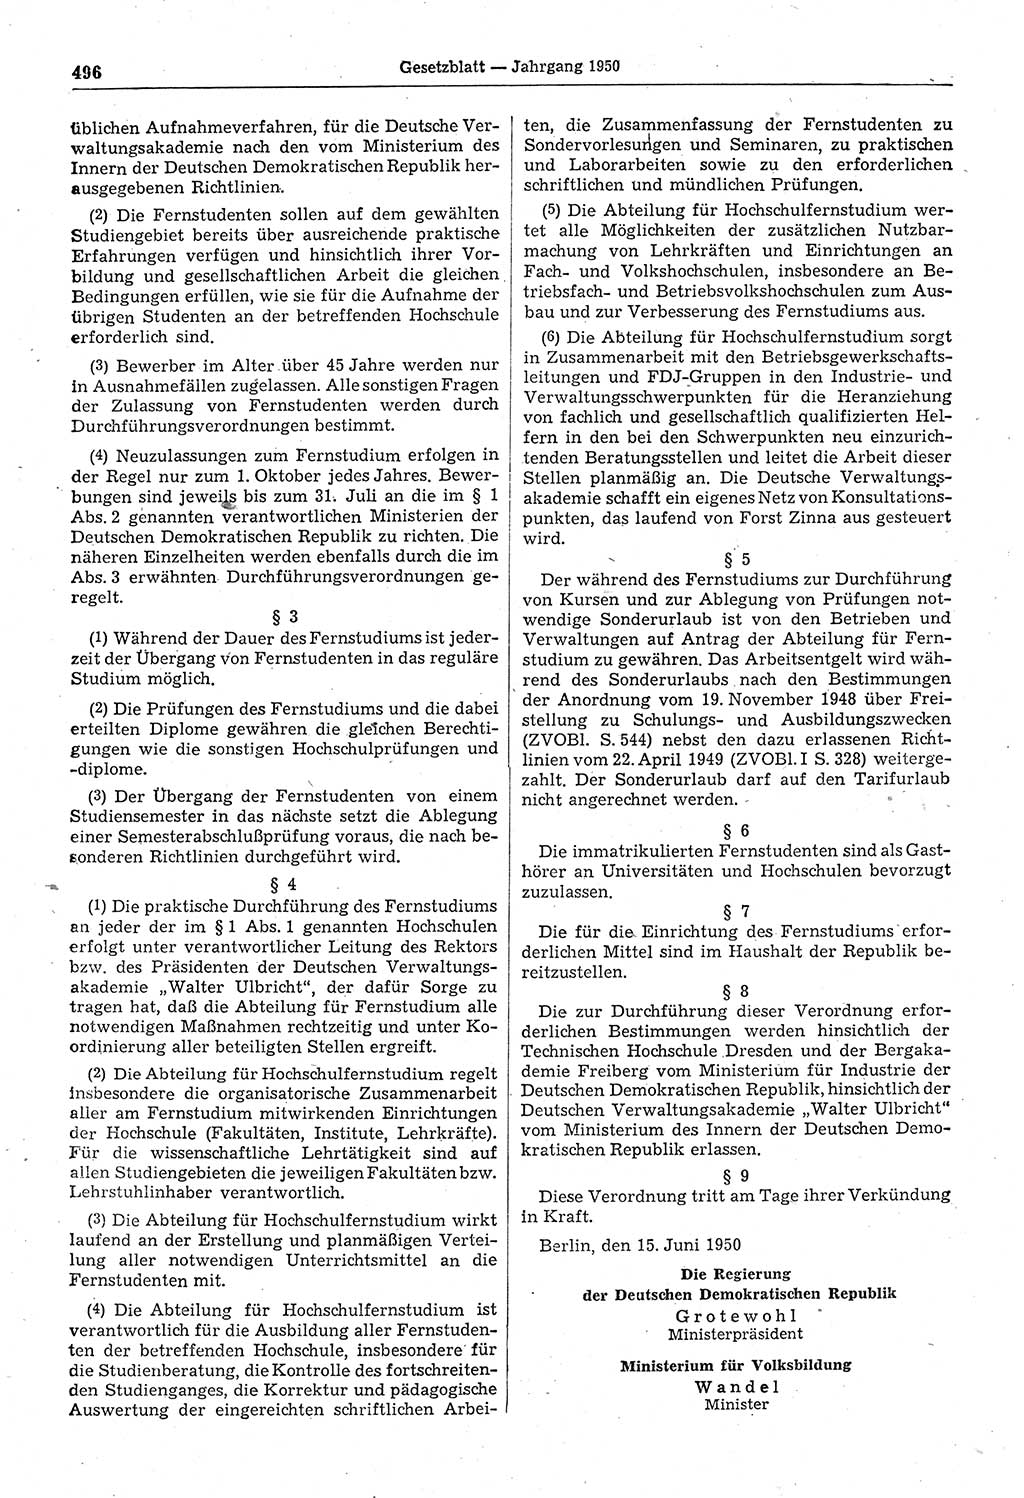 Gesetzblatt (GBl.) der Deutschen Demokratischen Republik (DDR) 1950, Seite 496 (GBl. DDR 1950, S. 496)